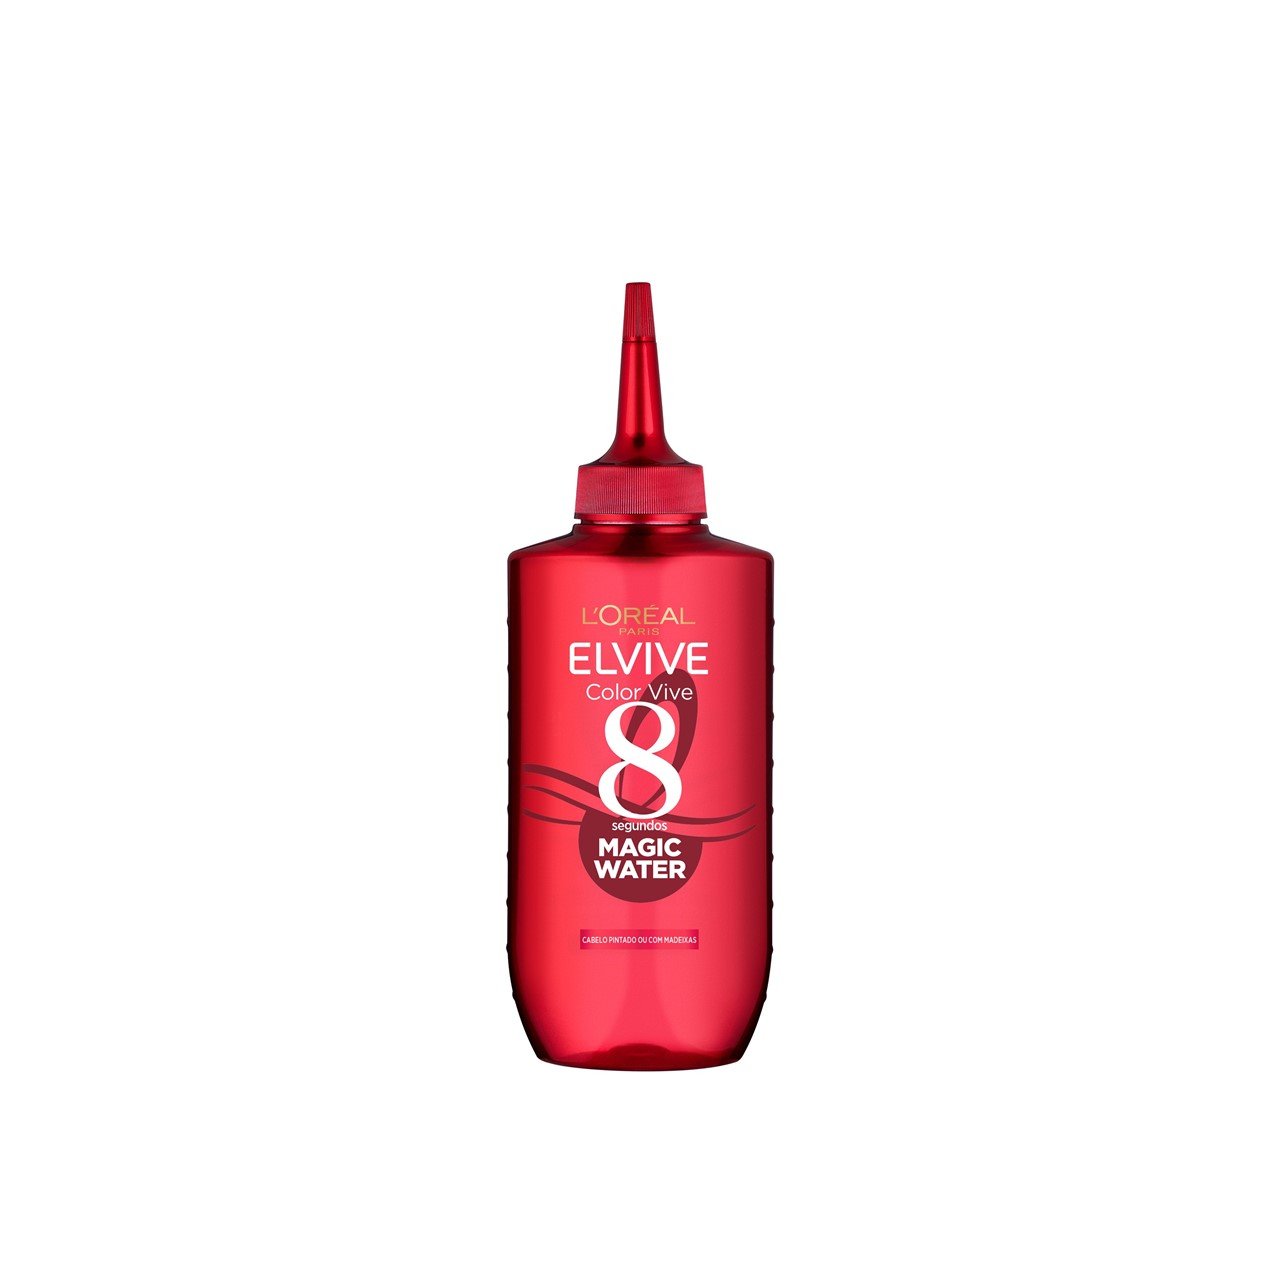 L'Oréal Paris Elvive Color Vive 8 Seconds Magic Water 200ml (6.76fl oz)